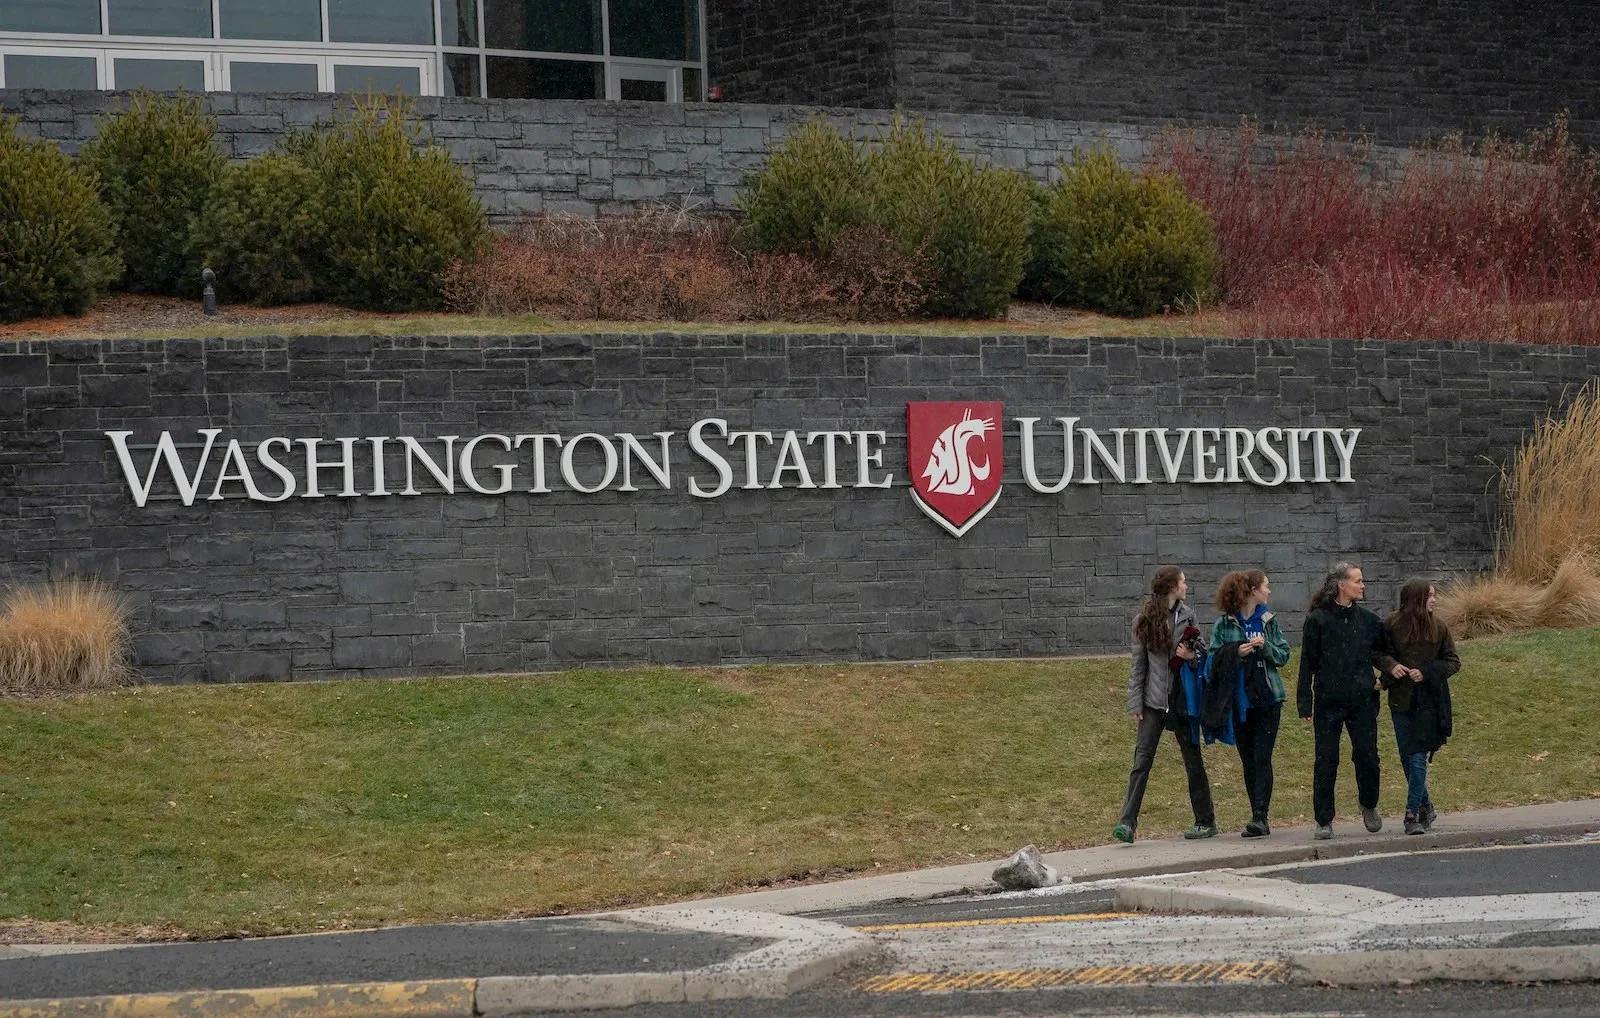 Students exit Washington State University on January 23, 2023.